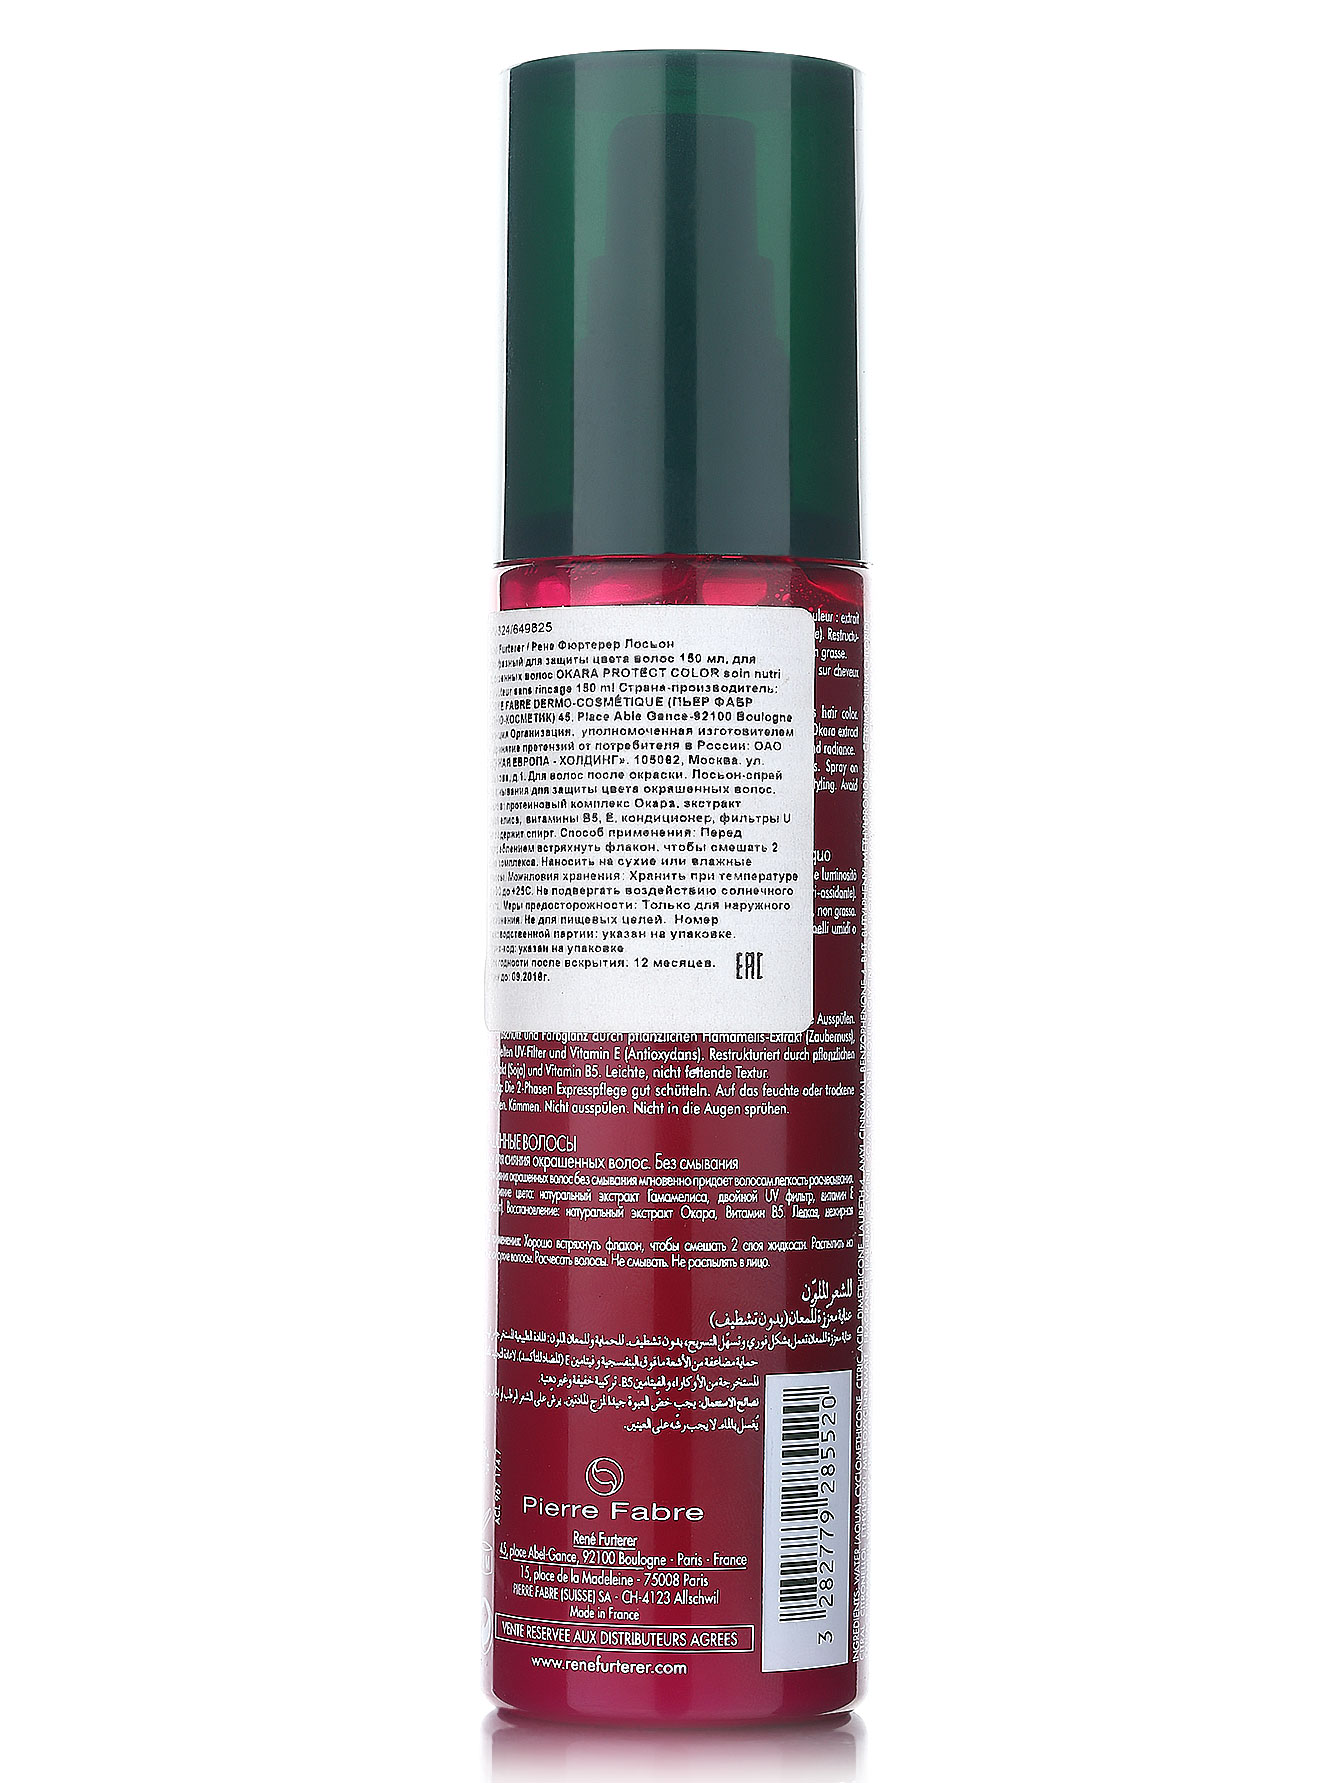  Лосьон двухфазный для защиты цвета волос - Okara, 150ml - Модель Верх-Низ